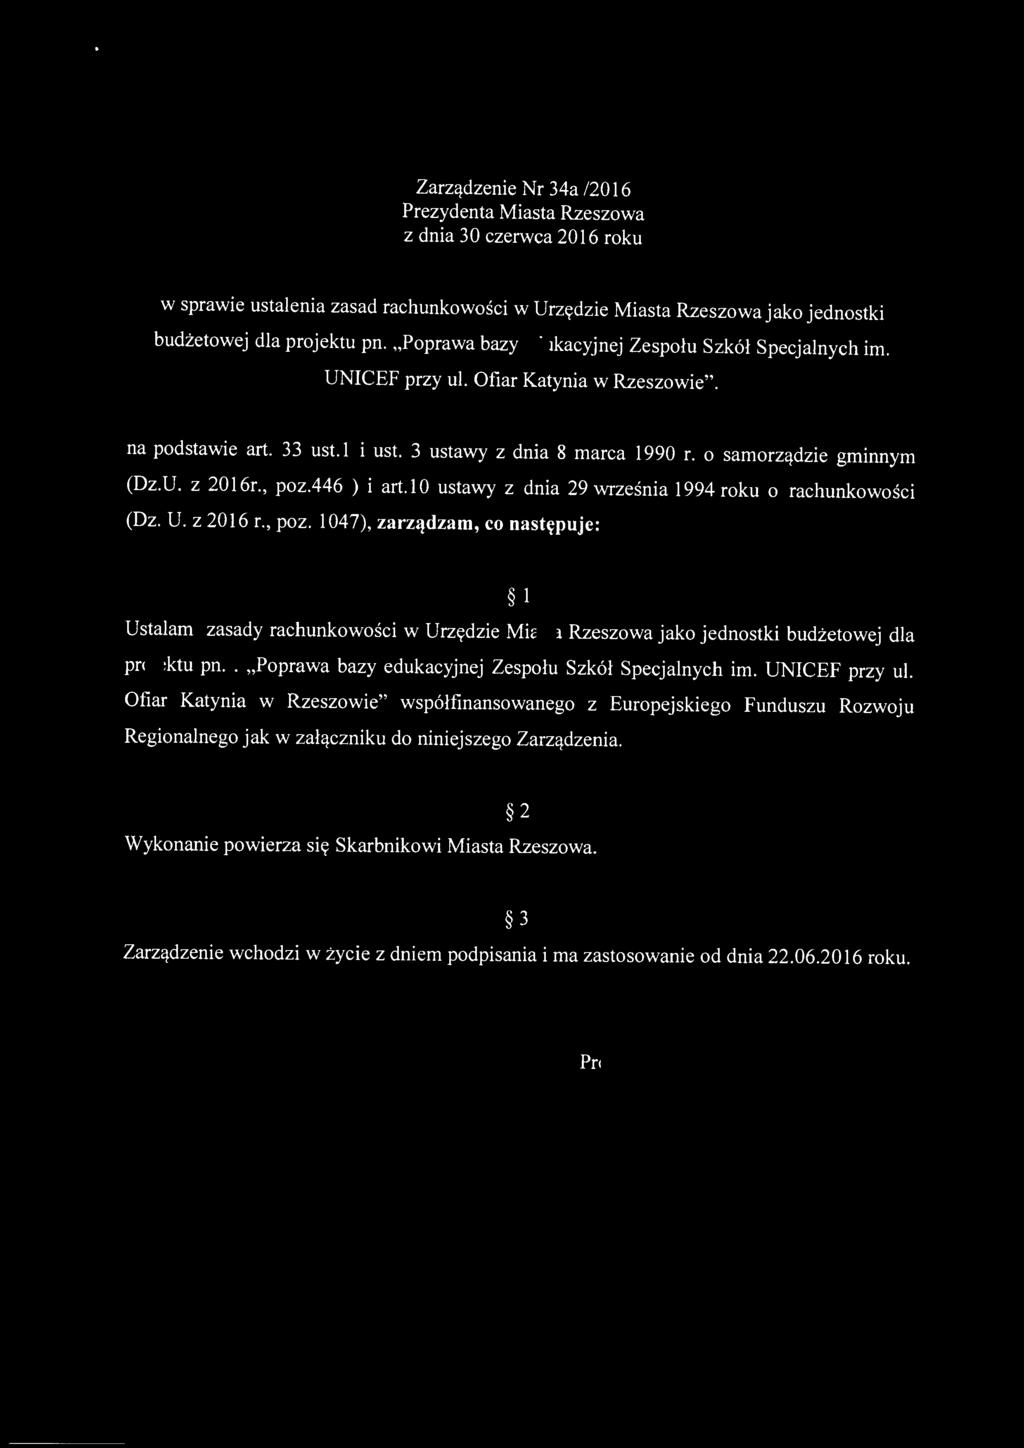 Zarządzenie Nr 34a /2016 Prezydenta Miasta Rzeszowa z dnia 30 czerwca 2016 roku w sprawie ustalenia zasad rachunkowości w Urzędzie Miasta Rzeszowa jako jednostki